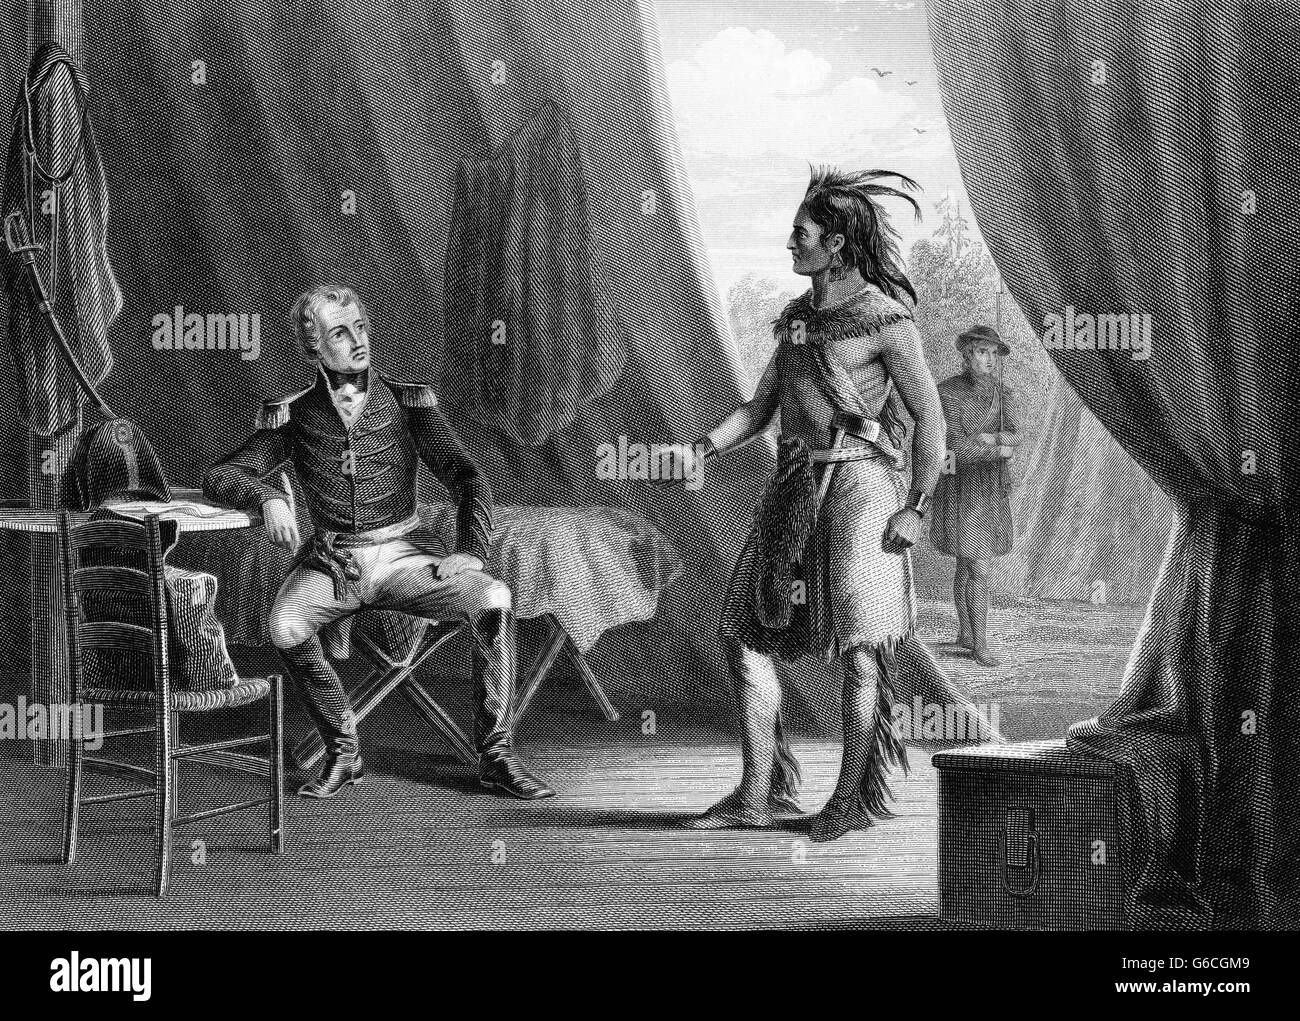 1814 LE GÉNÉRAL ANDREW JACKSON & RED EAGLE WEATHERFORD APRÈS LA DÉFAITE DES INDIENS BATAILLE DE HORSESHOE BEND OREGON CREEK INDIAN WARS Banque D'Images